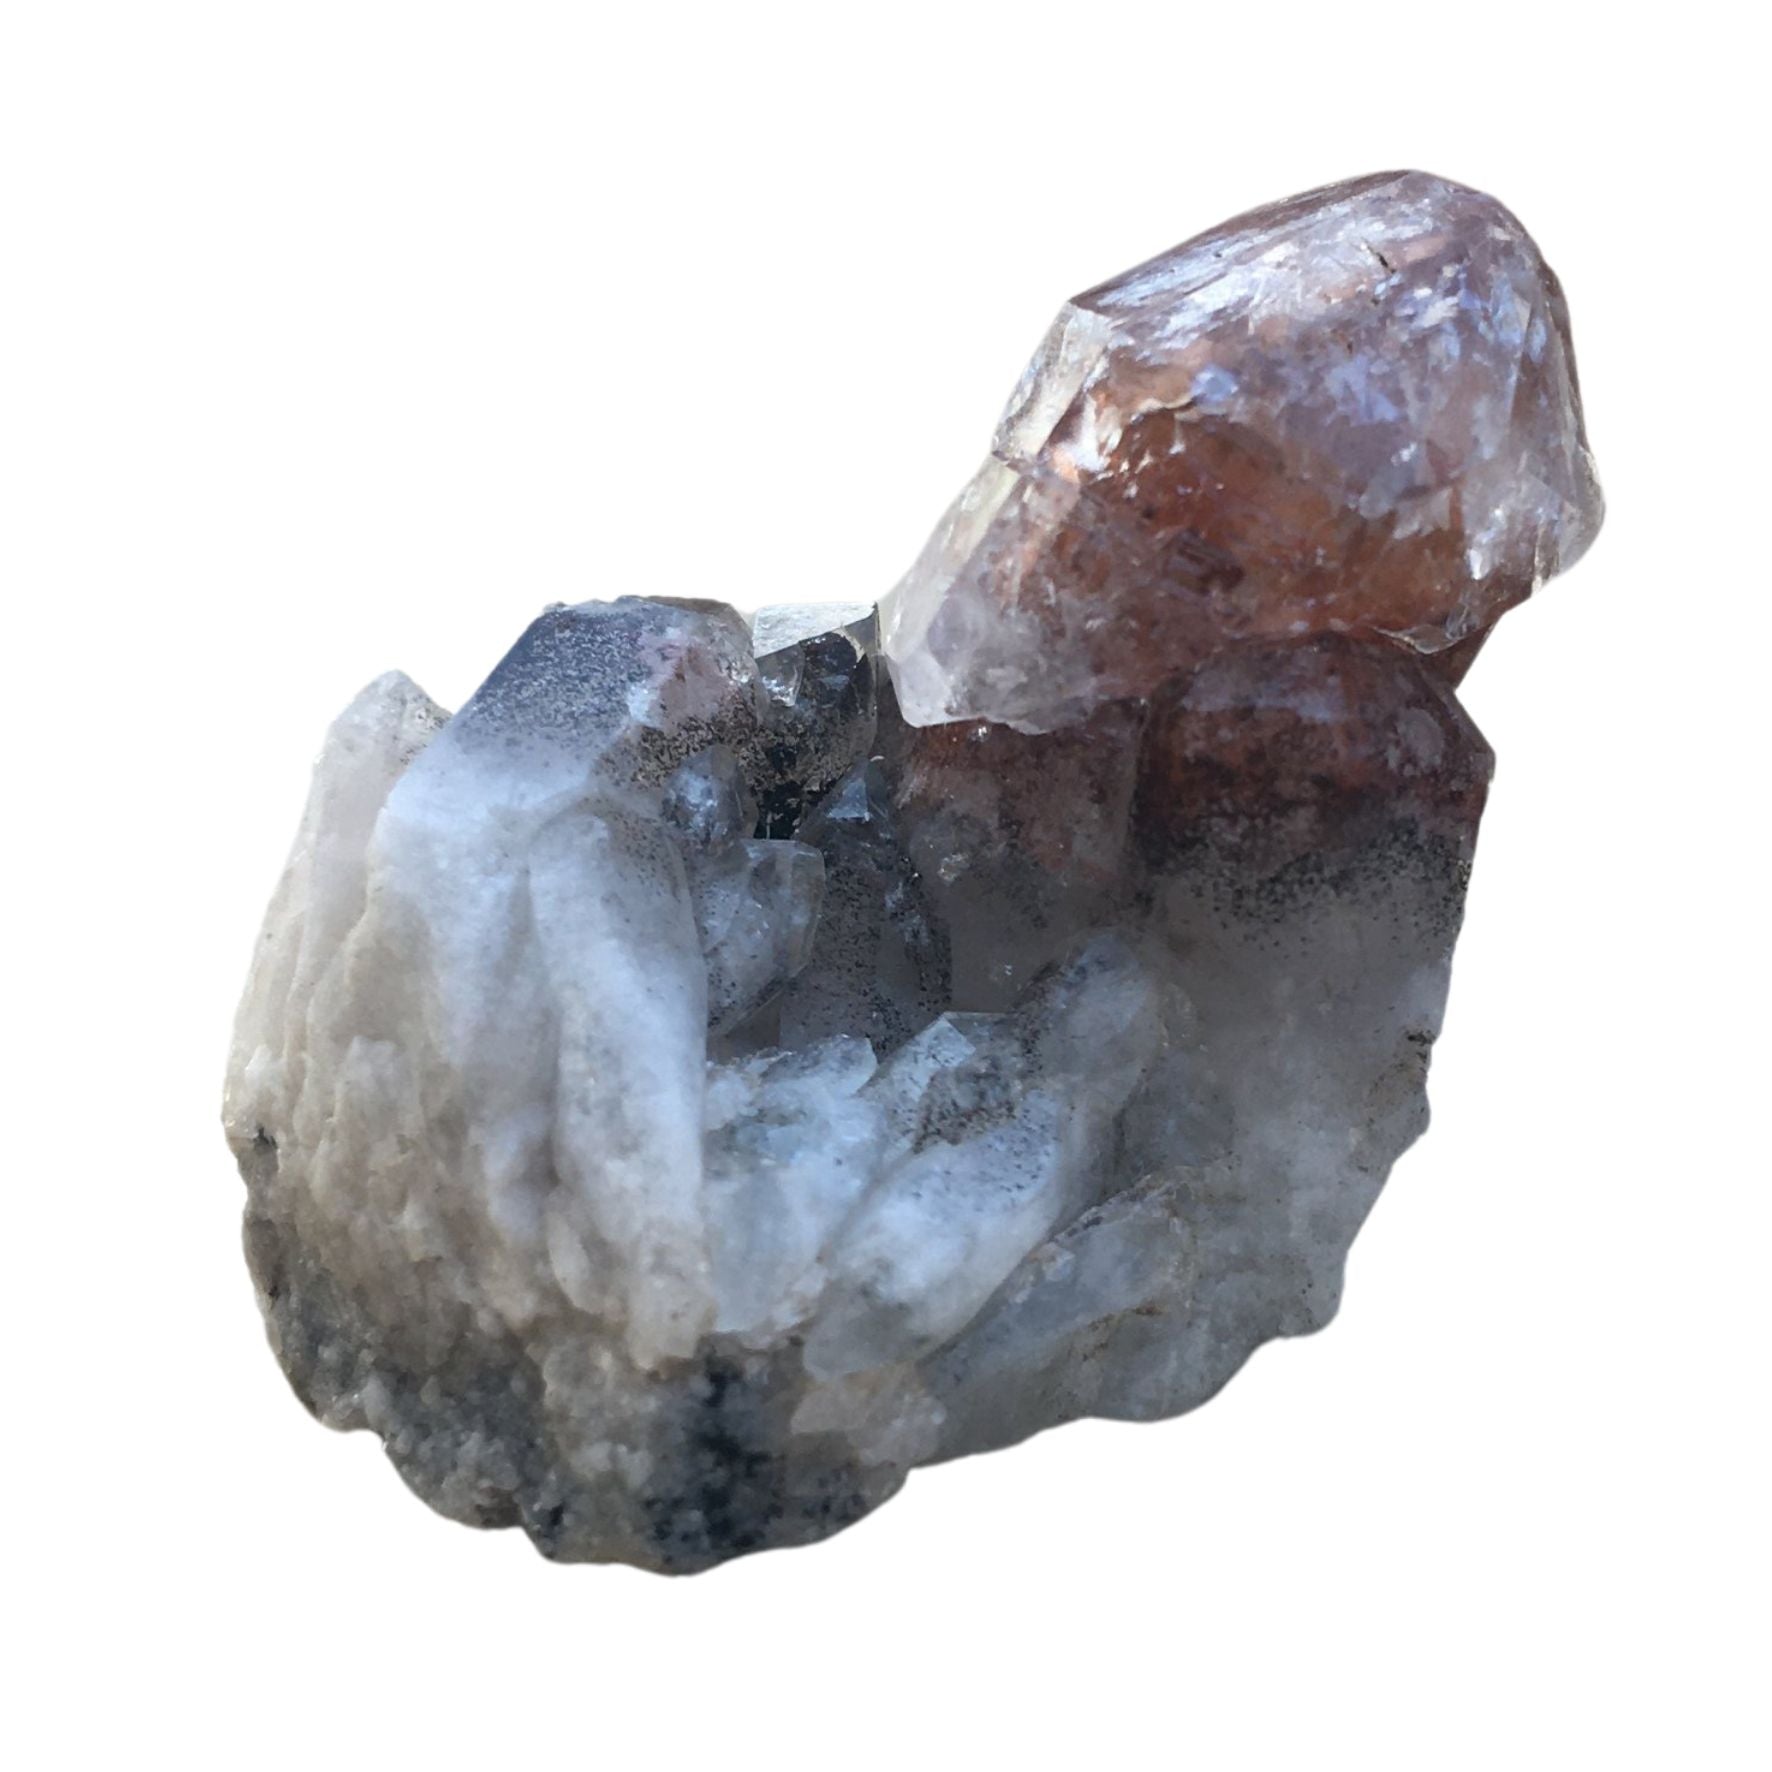 Hematite in quartz